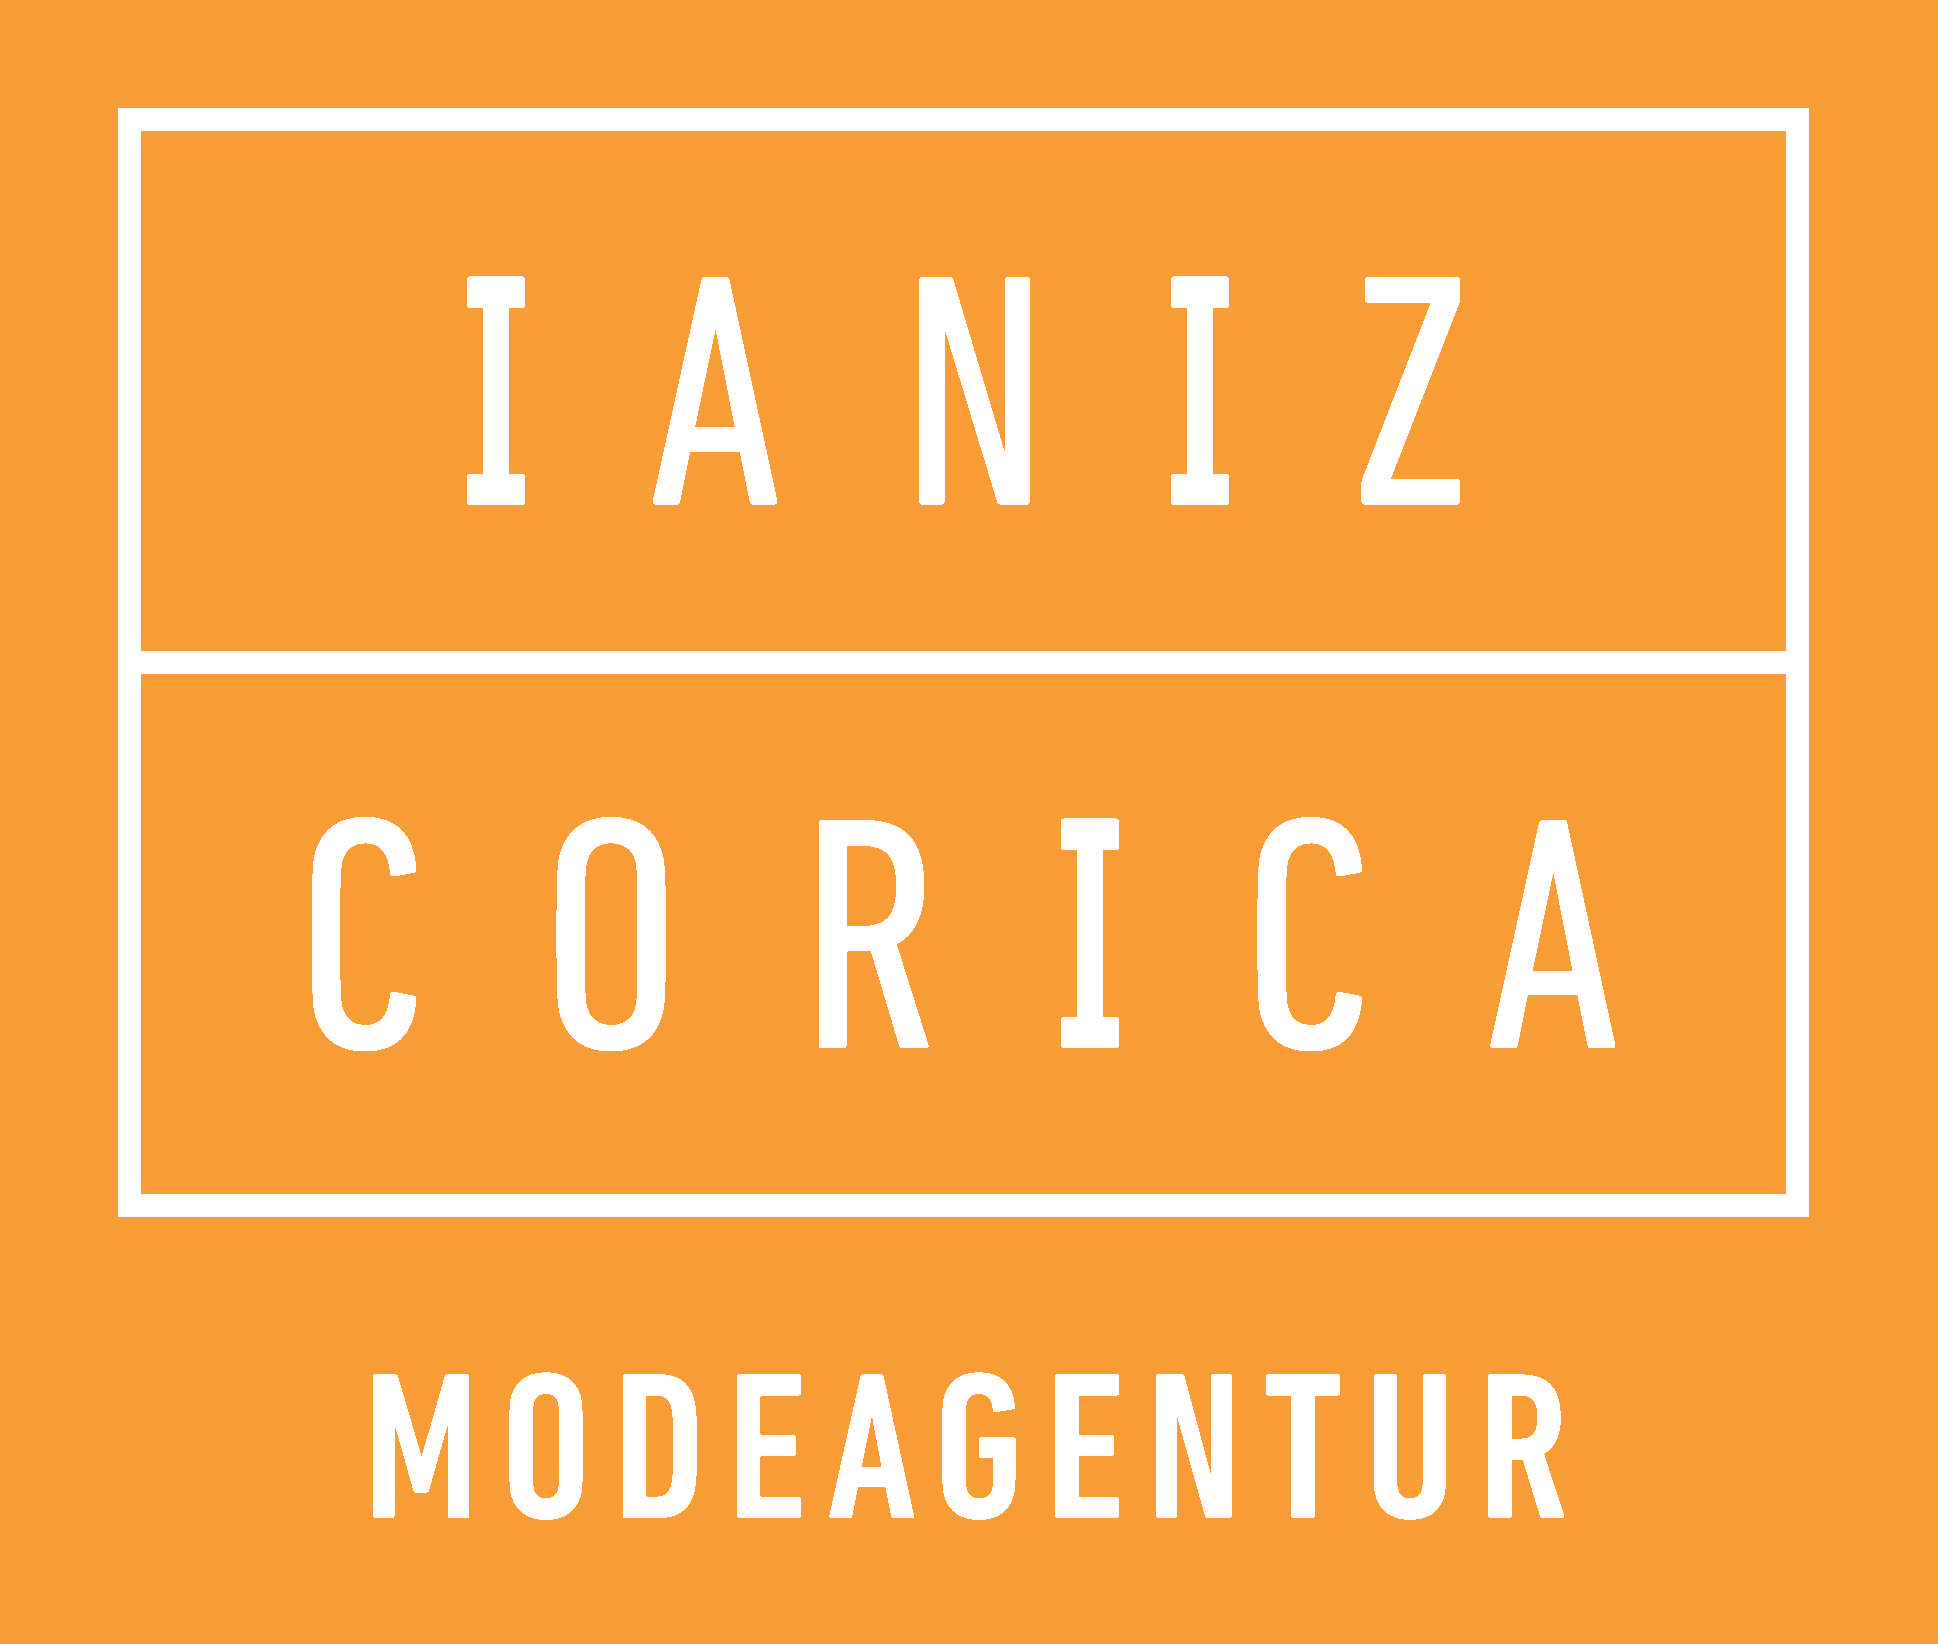 (c) Corica.ch